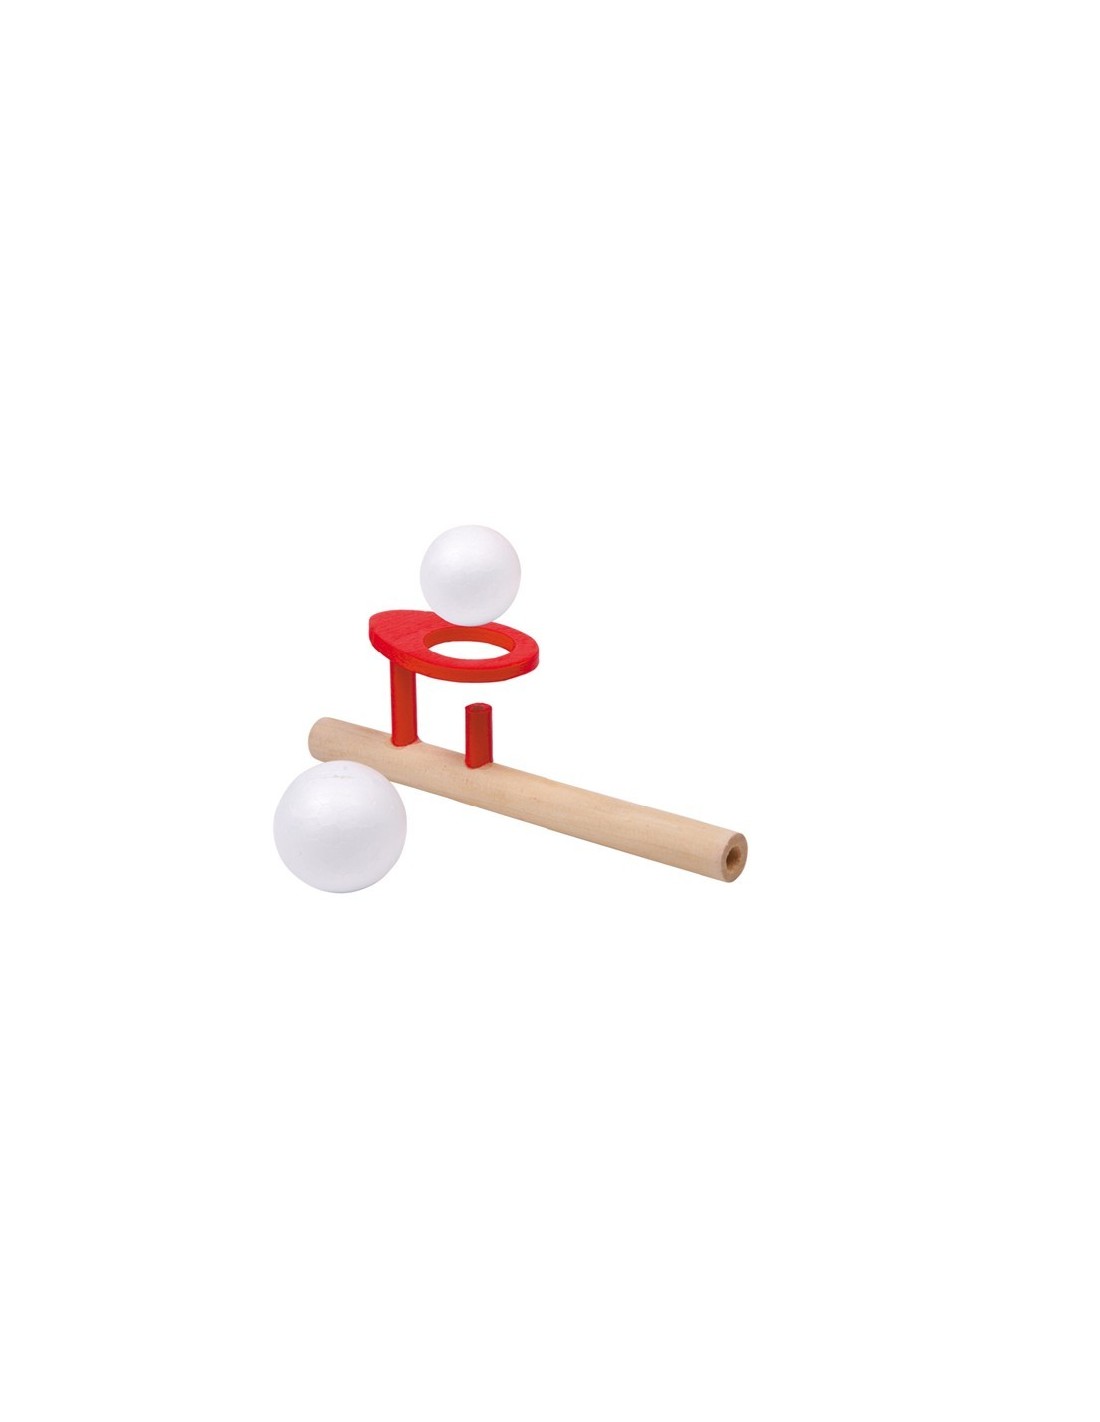 Joc de fusta pilota flotant joc per estimular la respiració i habilitat joc tradicional